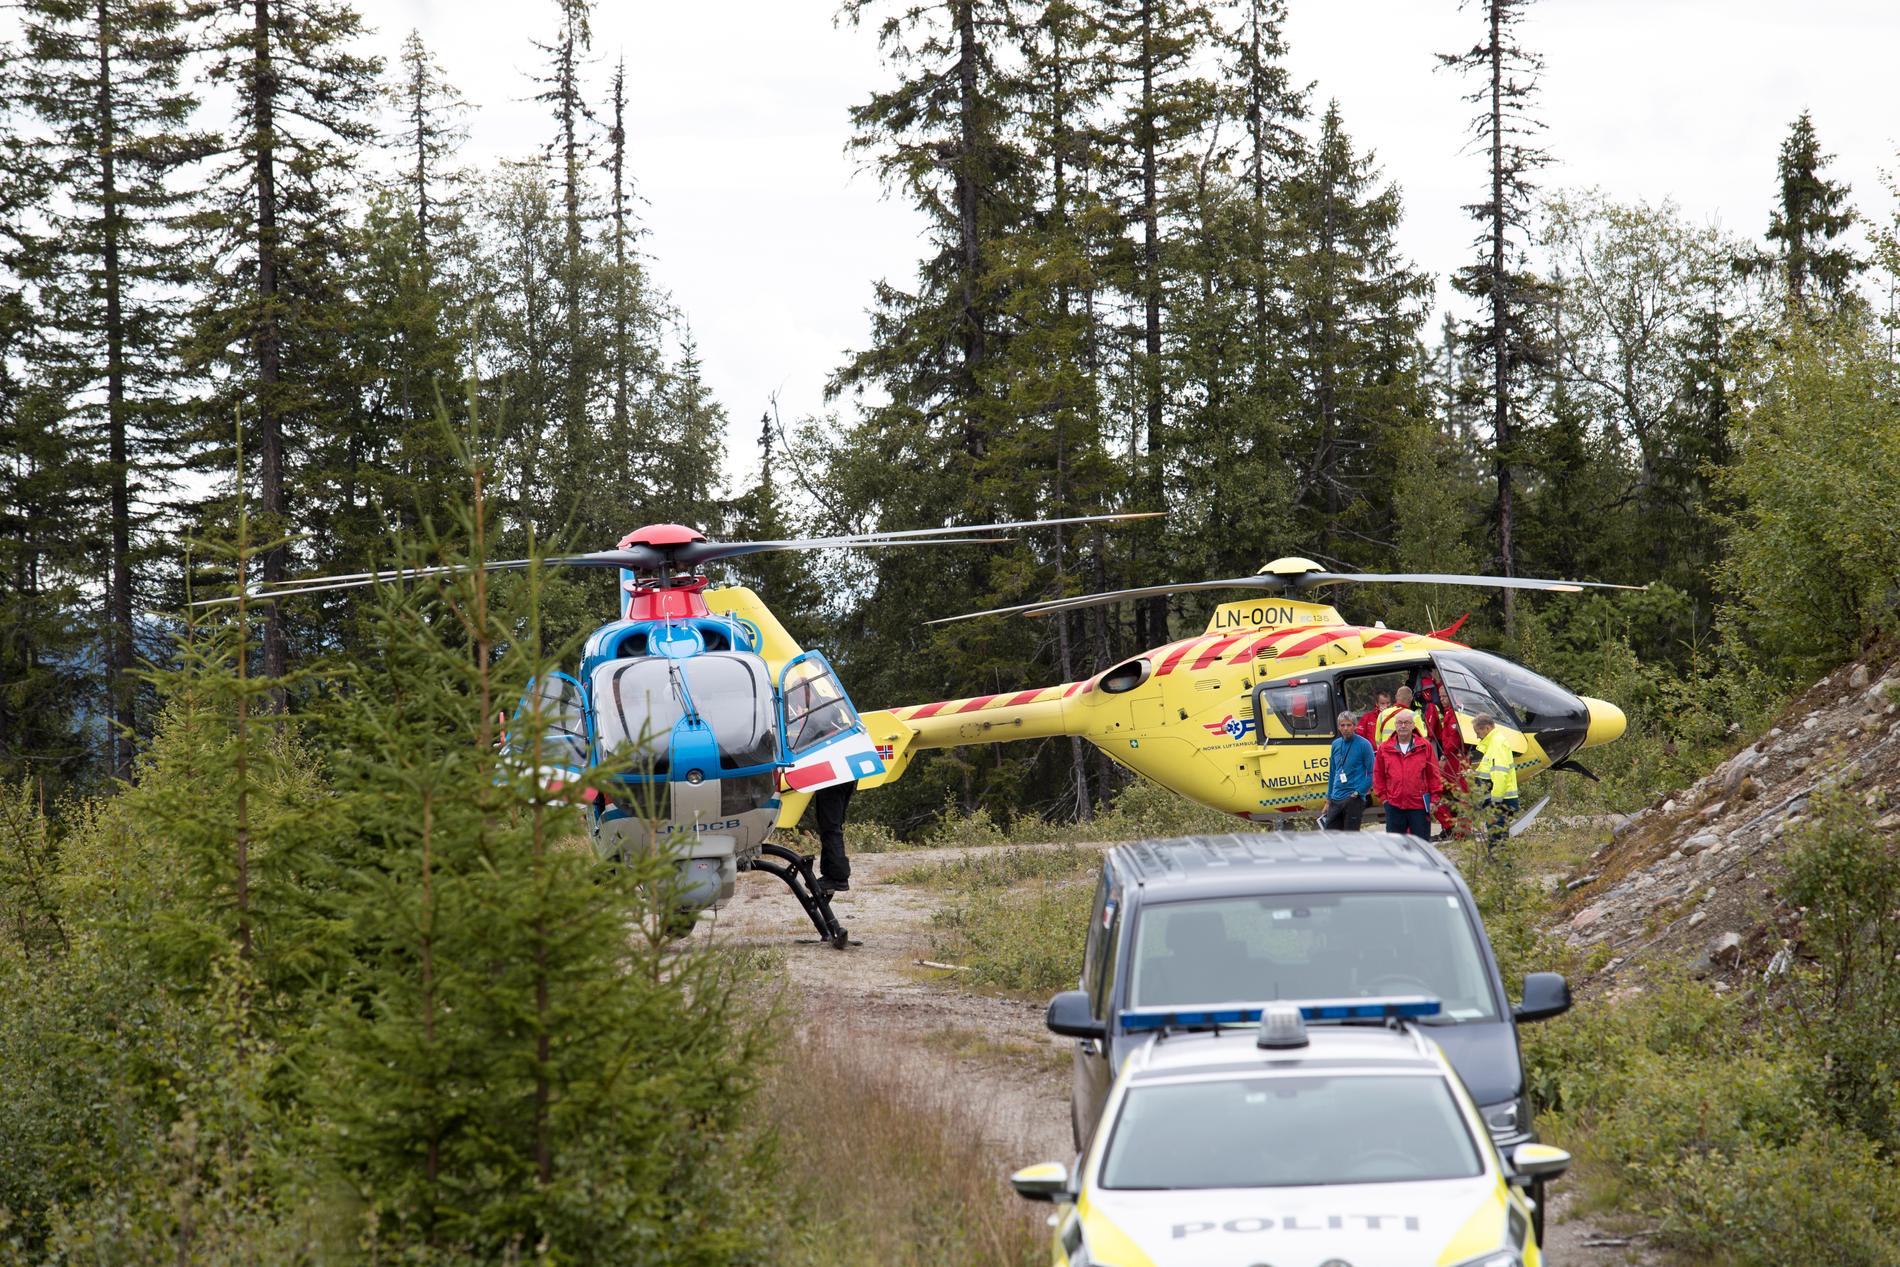 HENTET FLYKROPPEN: Havarikommisjonen hentet onsdag kveld ut flykroppen etter dødsulykken i Sør-Aurdal.